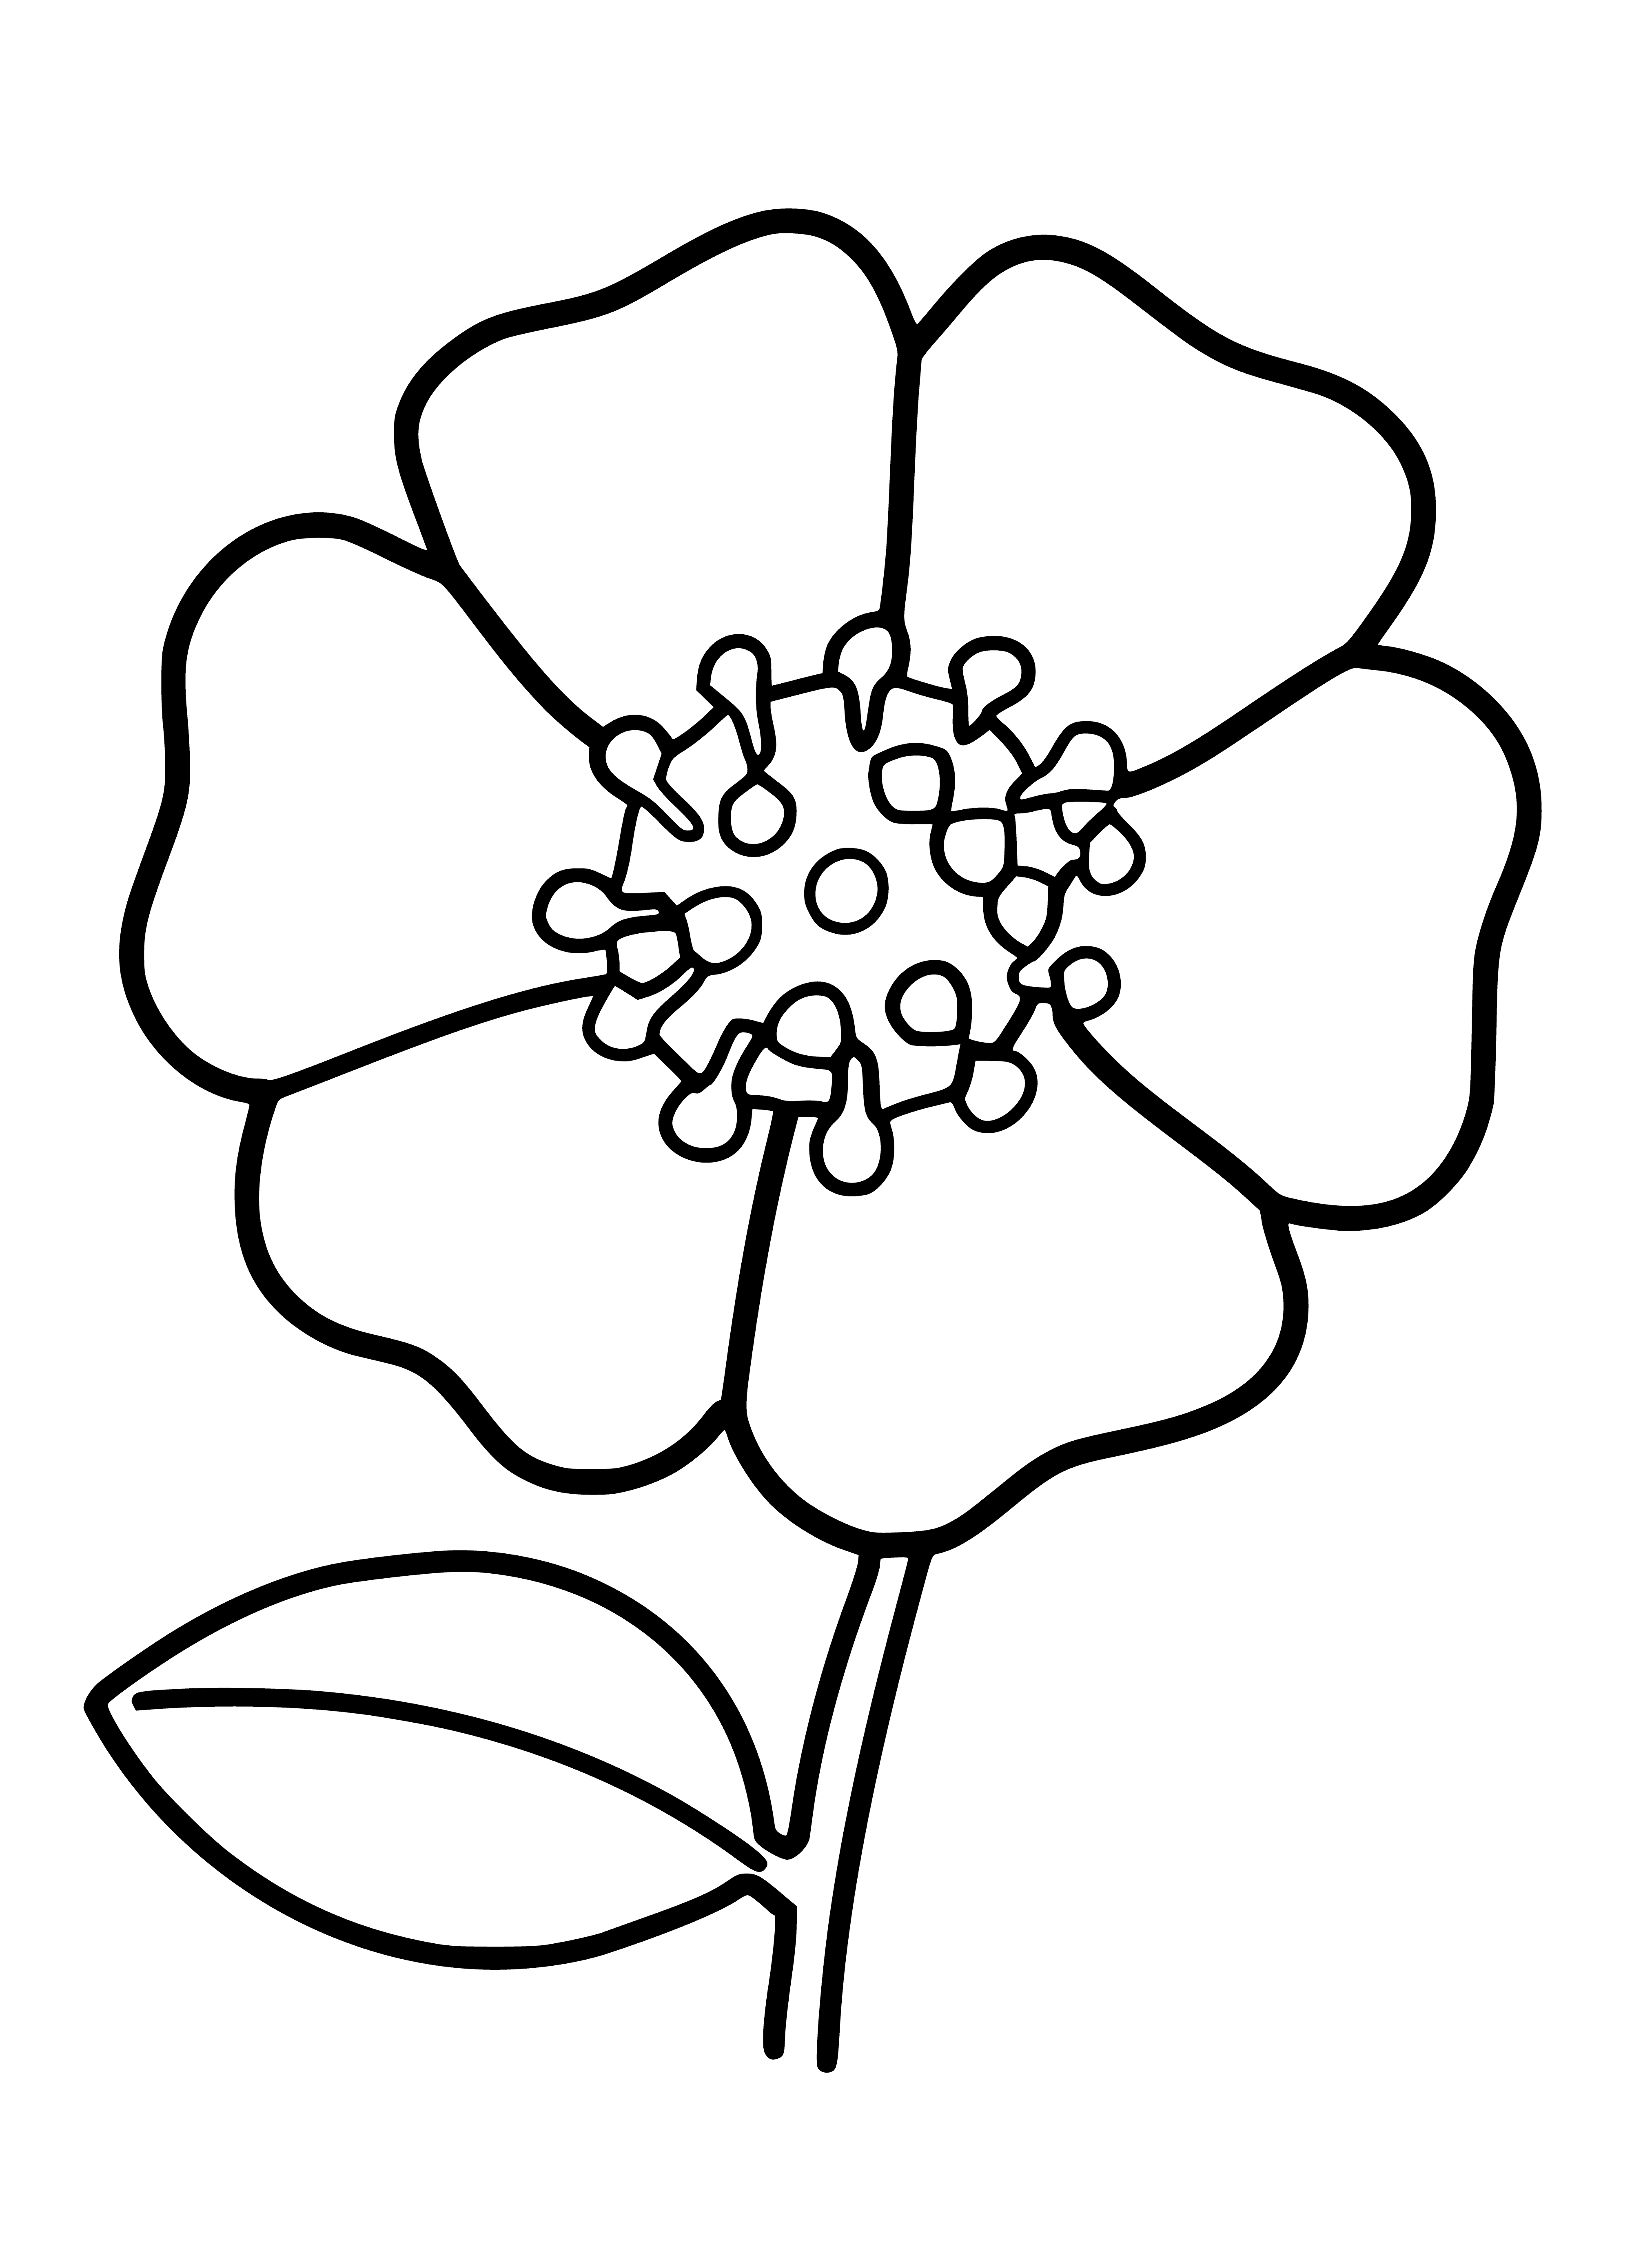 Blom inkleurbladsy